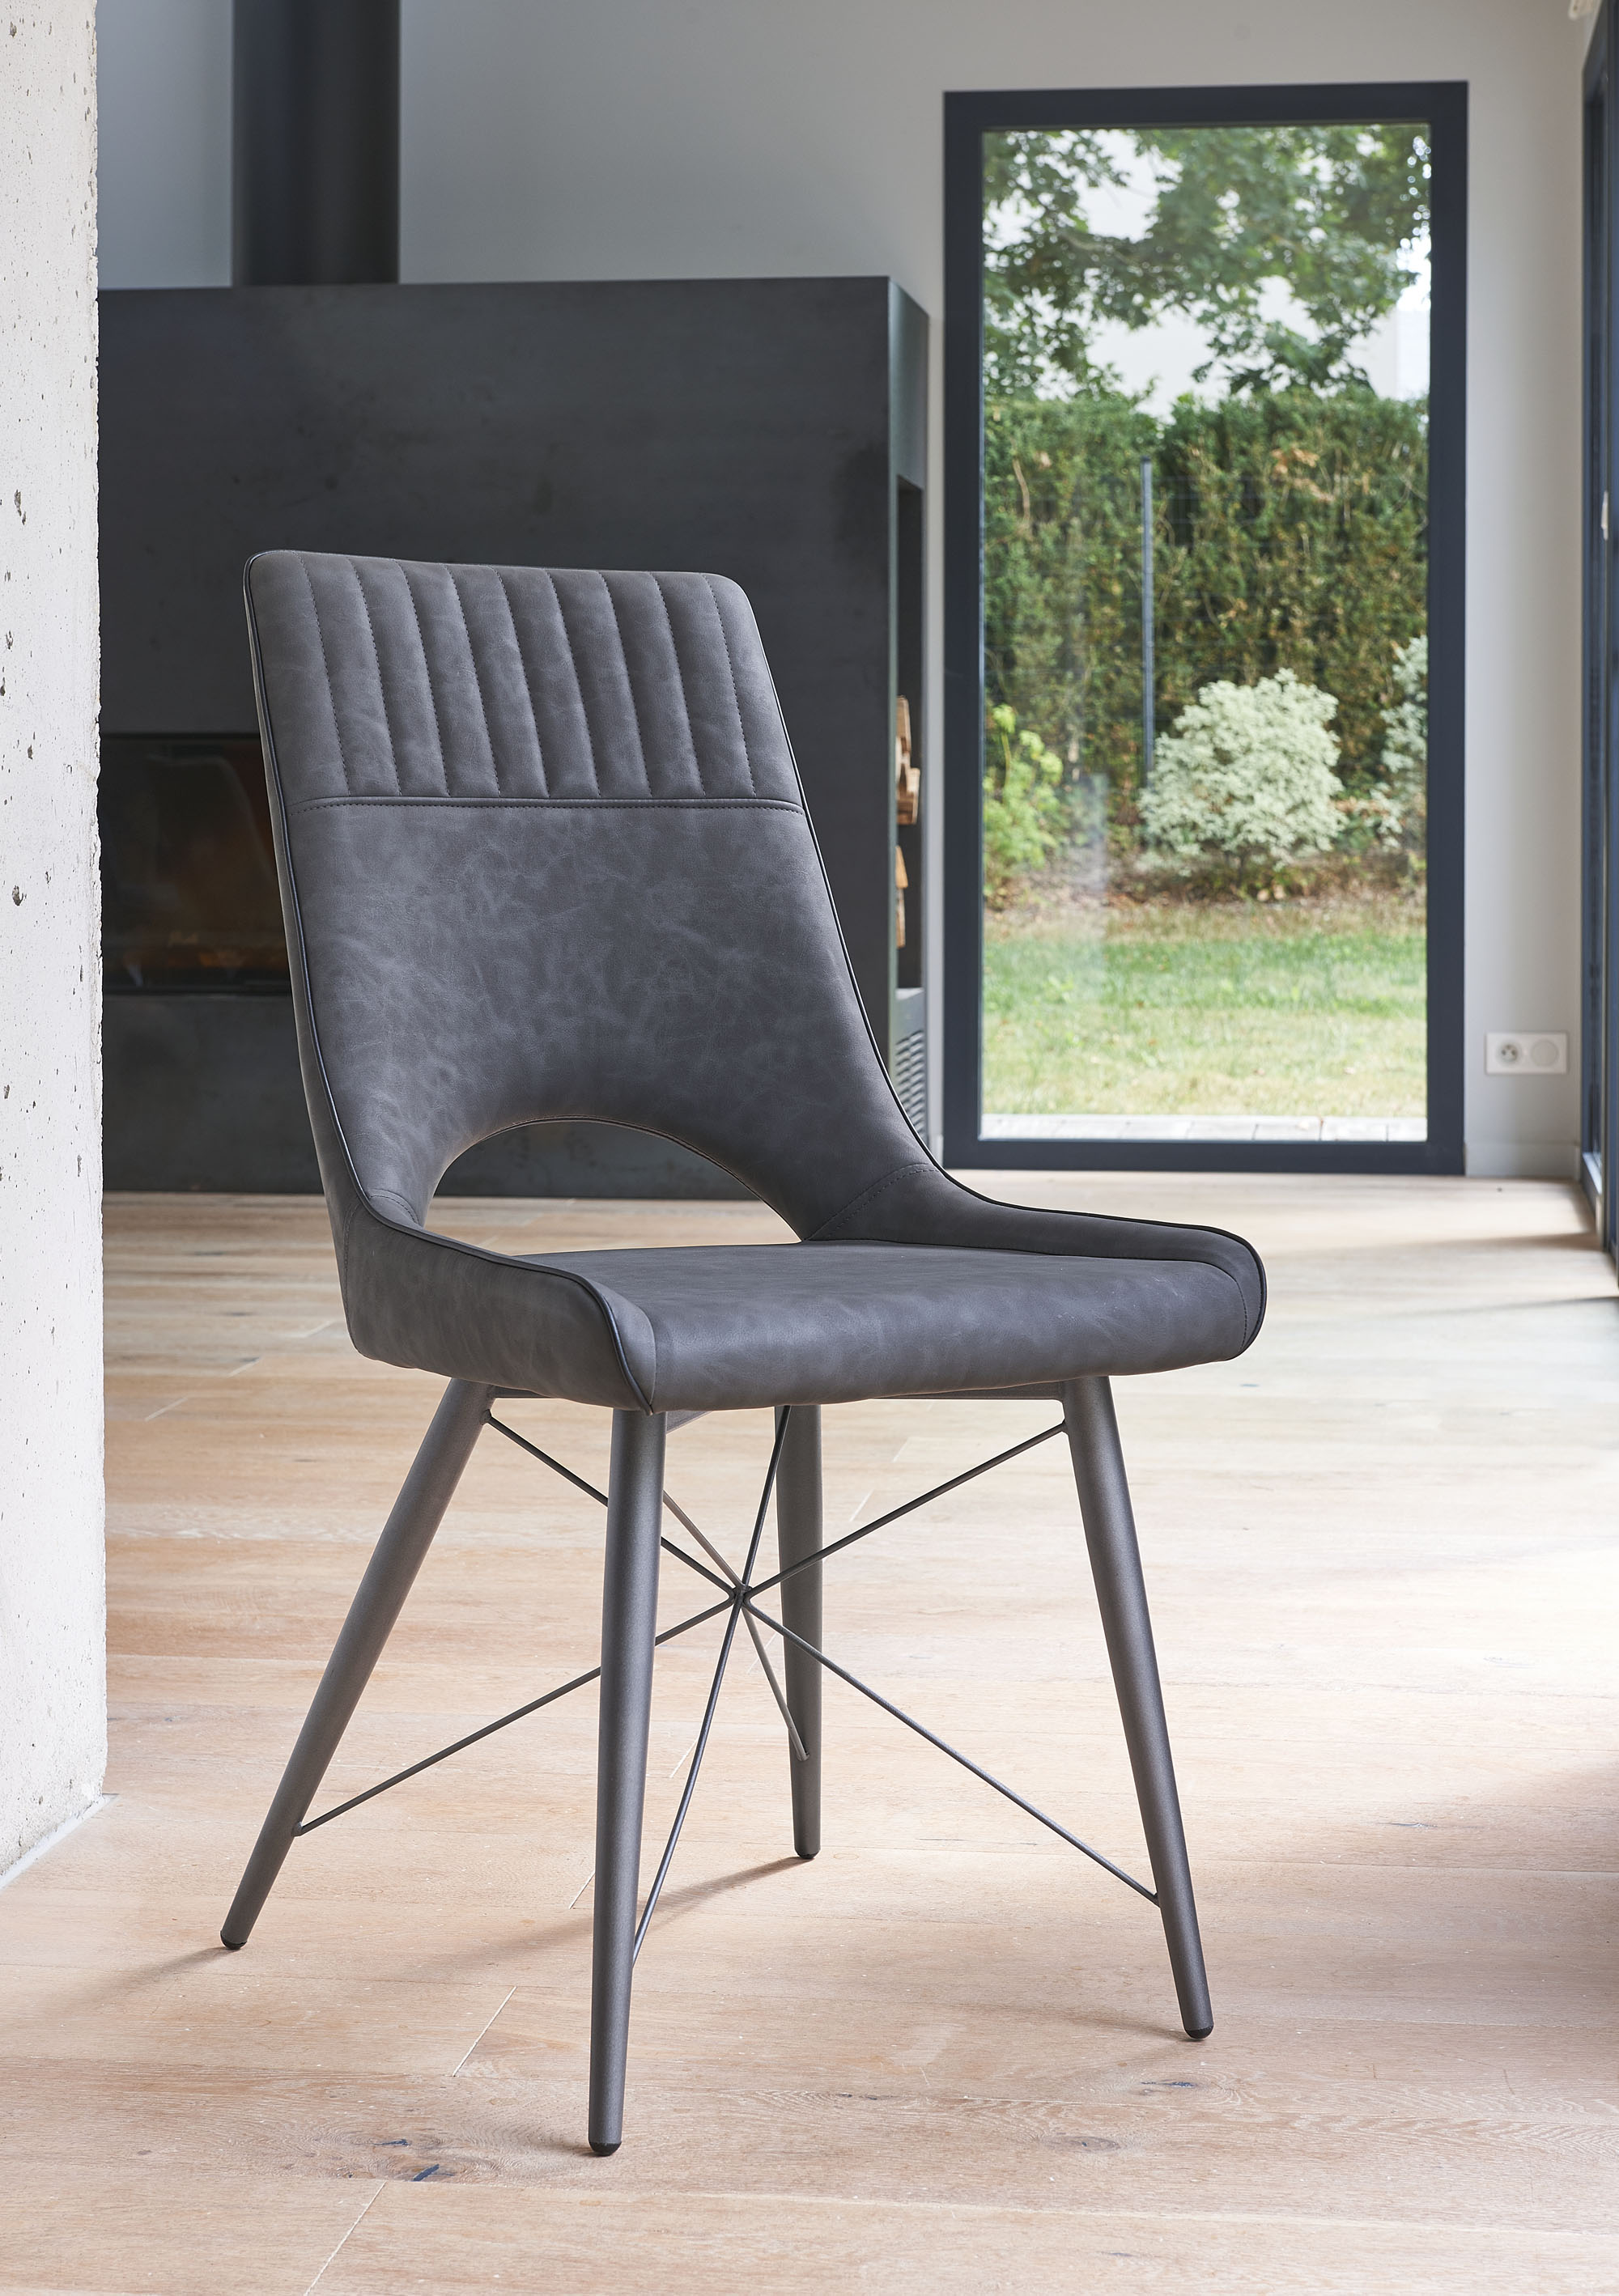 Tout le confort d'une chaise design - Girardeau